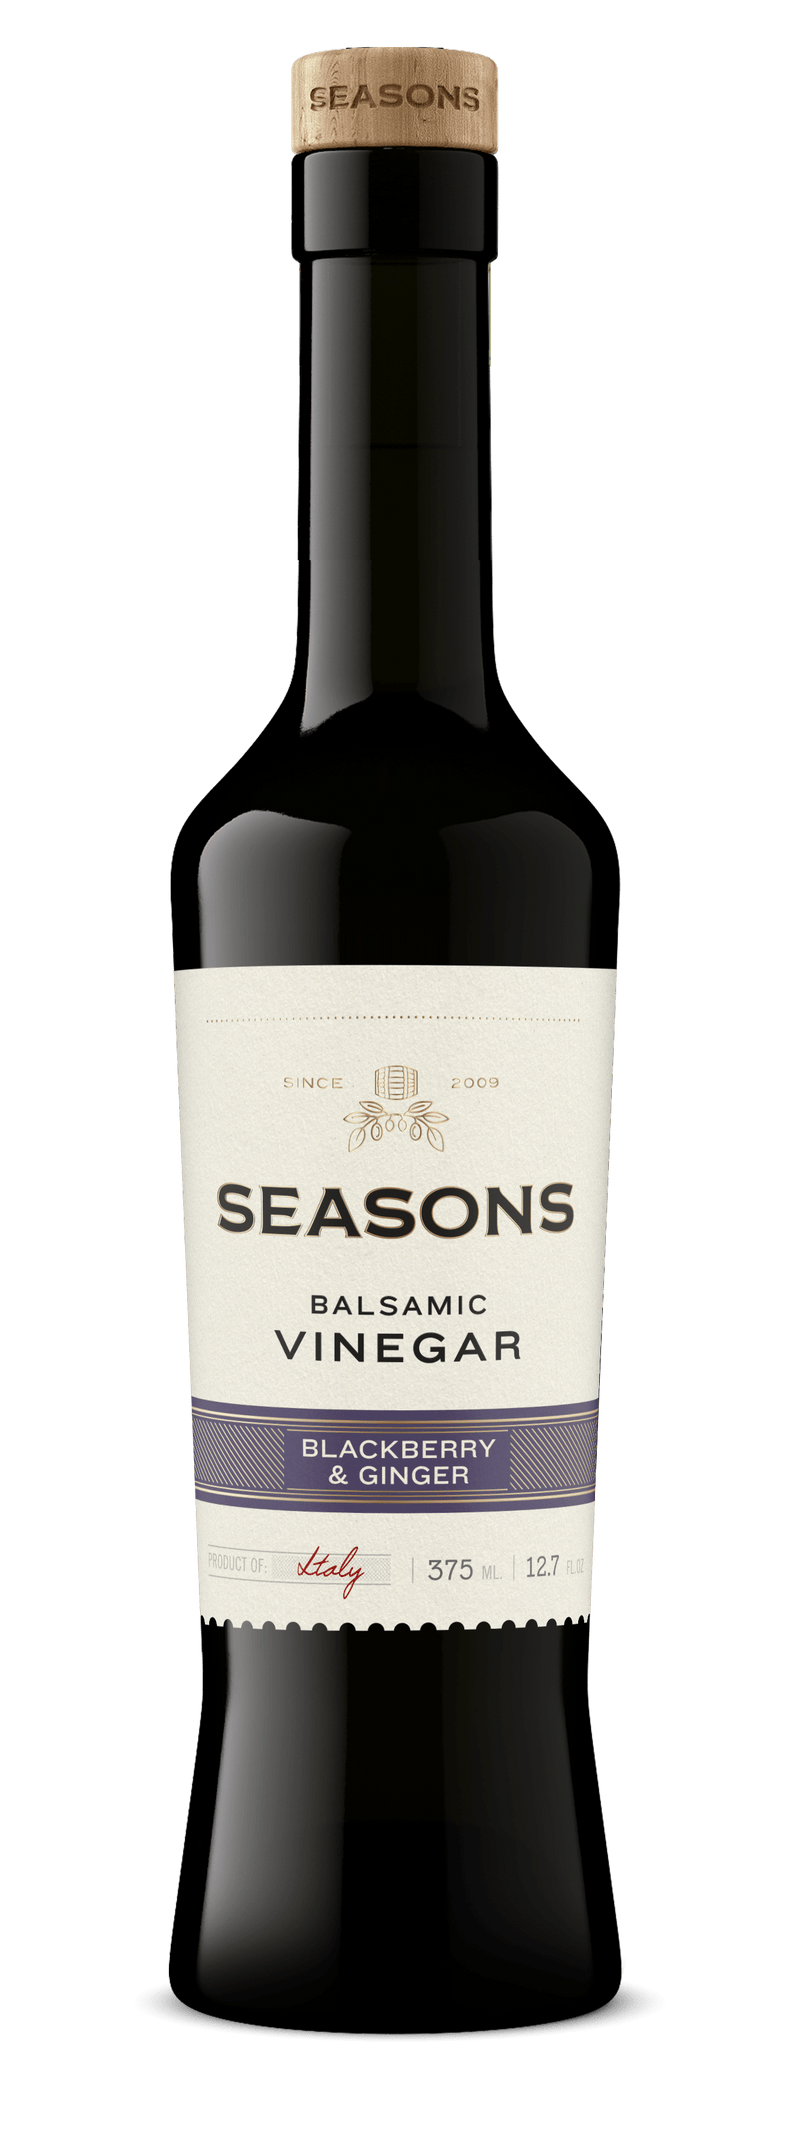 Seasons Dark Balsamic 375mL Blackberry & Ginger